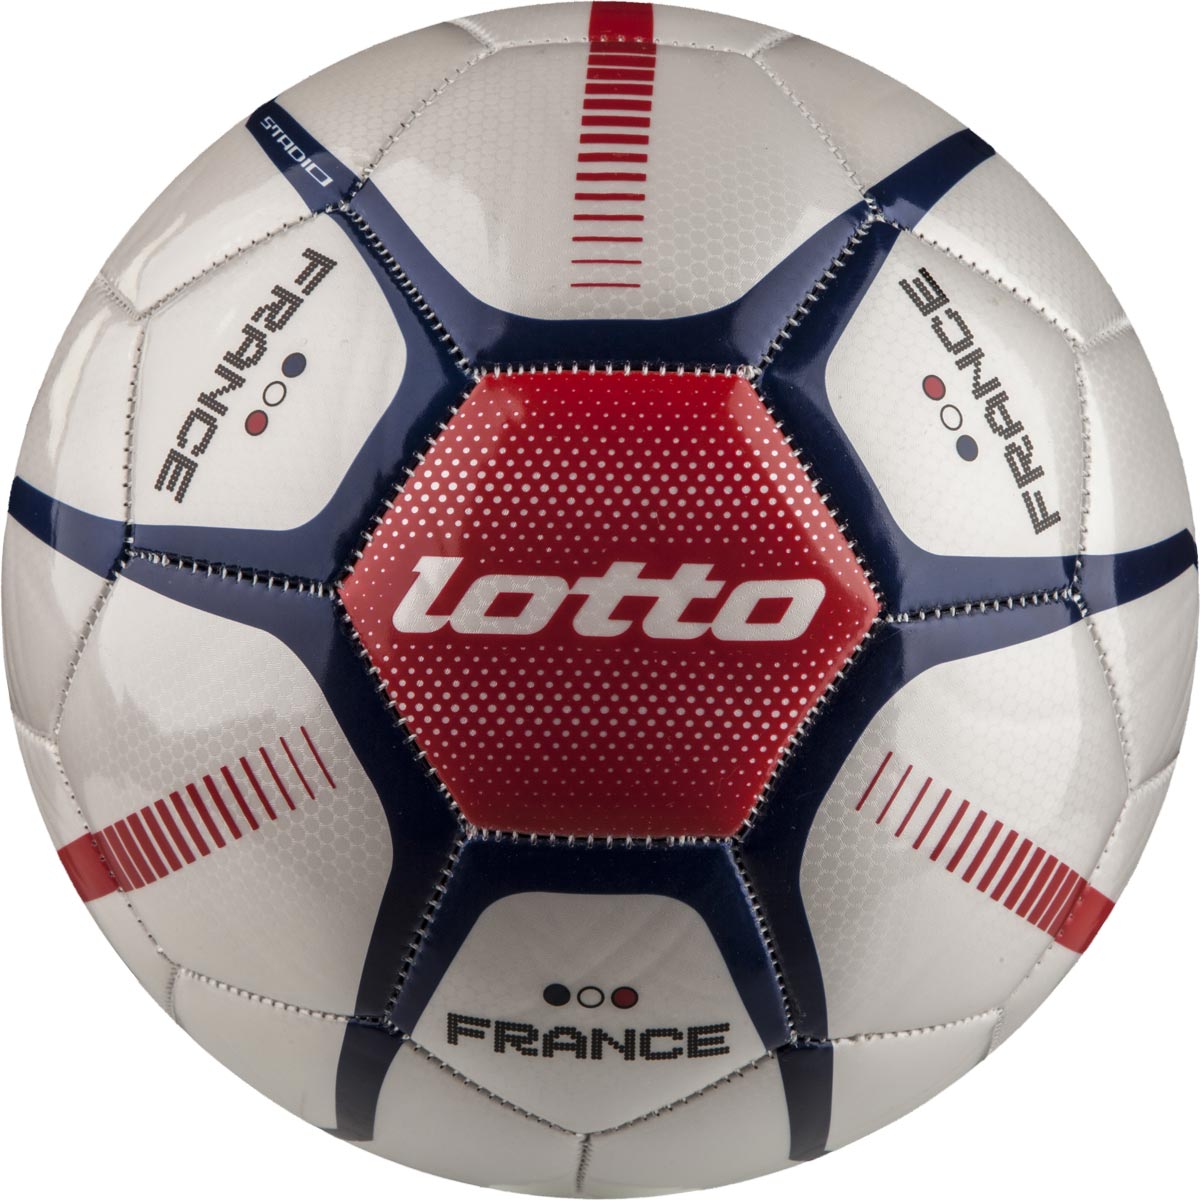 STADIO POTENZA FB900 - Fotbalový míč